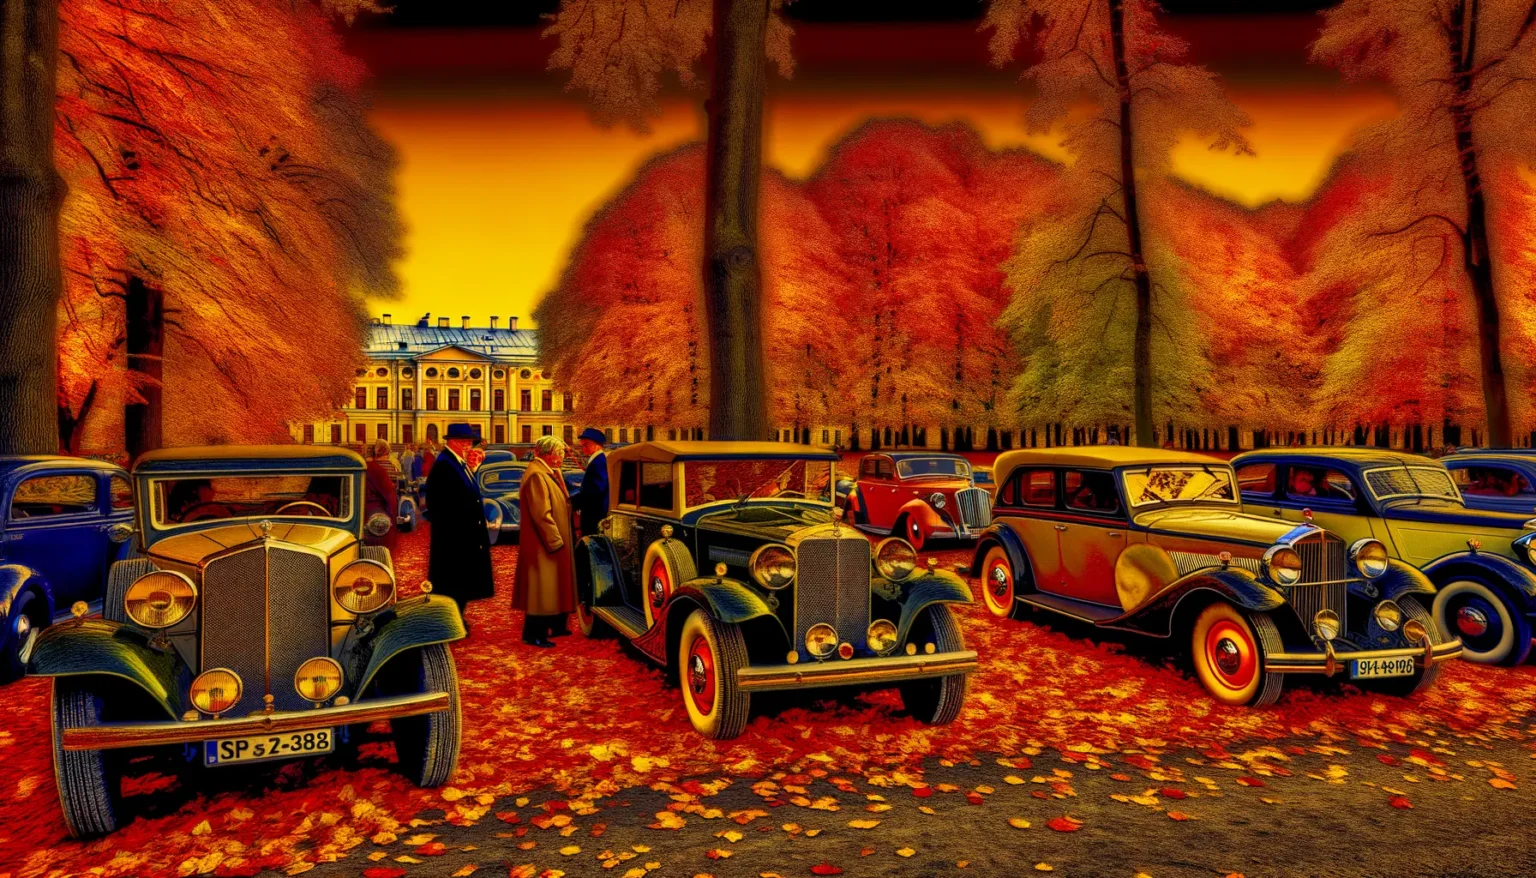 Landschaft mit Vintage-Autos und Personen in historischer Kleidung auf einem mit Herbstlaub bedeckten Boden, vor dem Hintergrund eines klassischen Gebäudes und Bäumen mit leuchtend rotem Laub unter einem dramatischen, orangefarbenen Himmel.